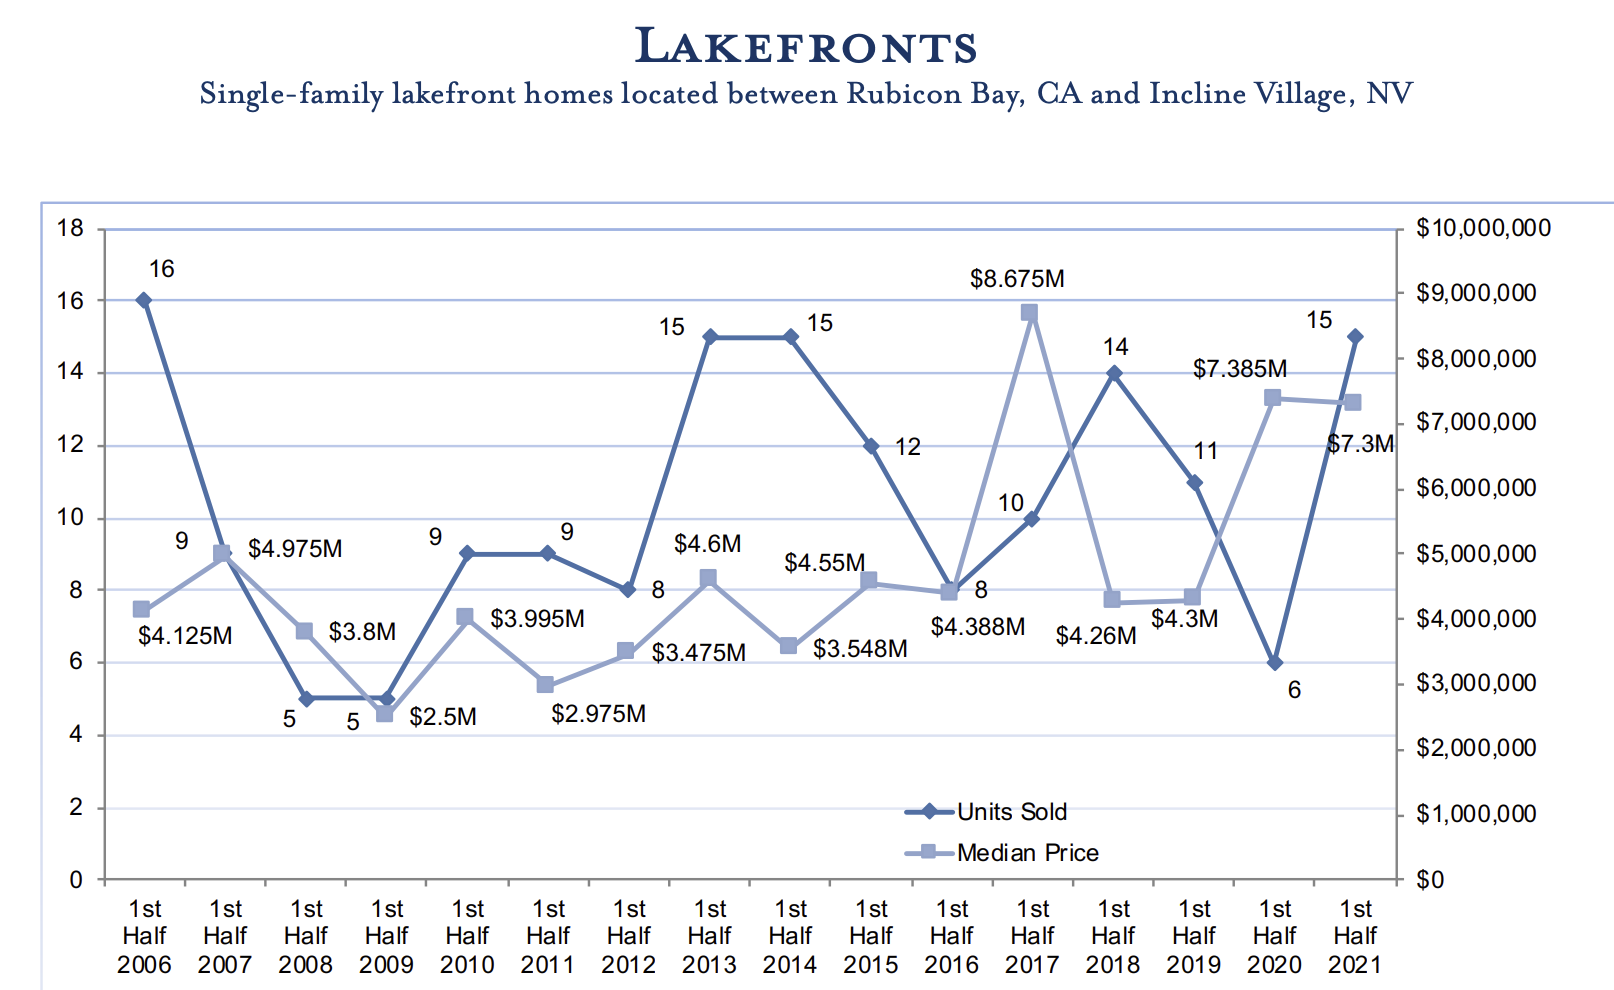 Q2 2021 Lake Tahoe Real Estate market Update